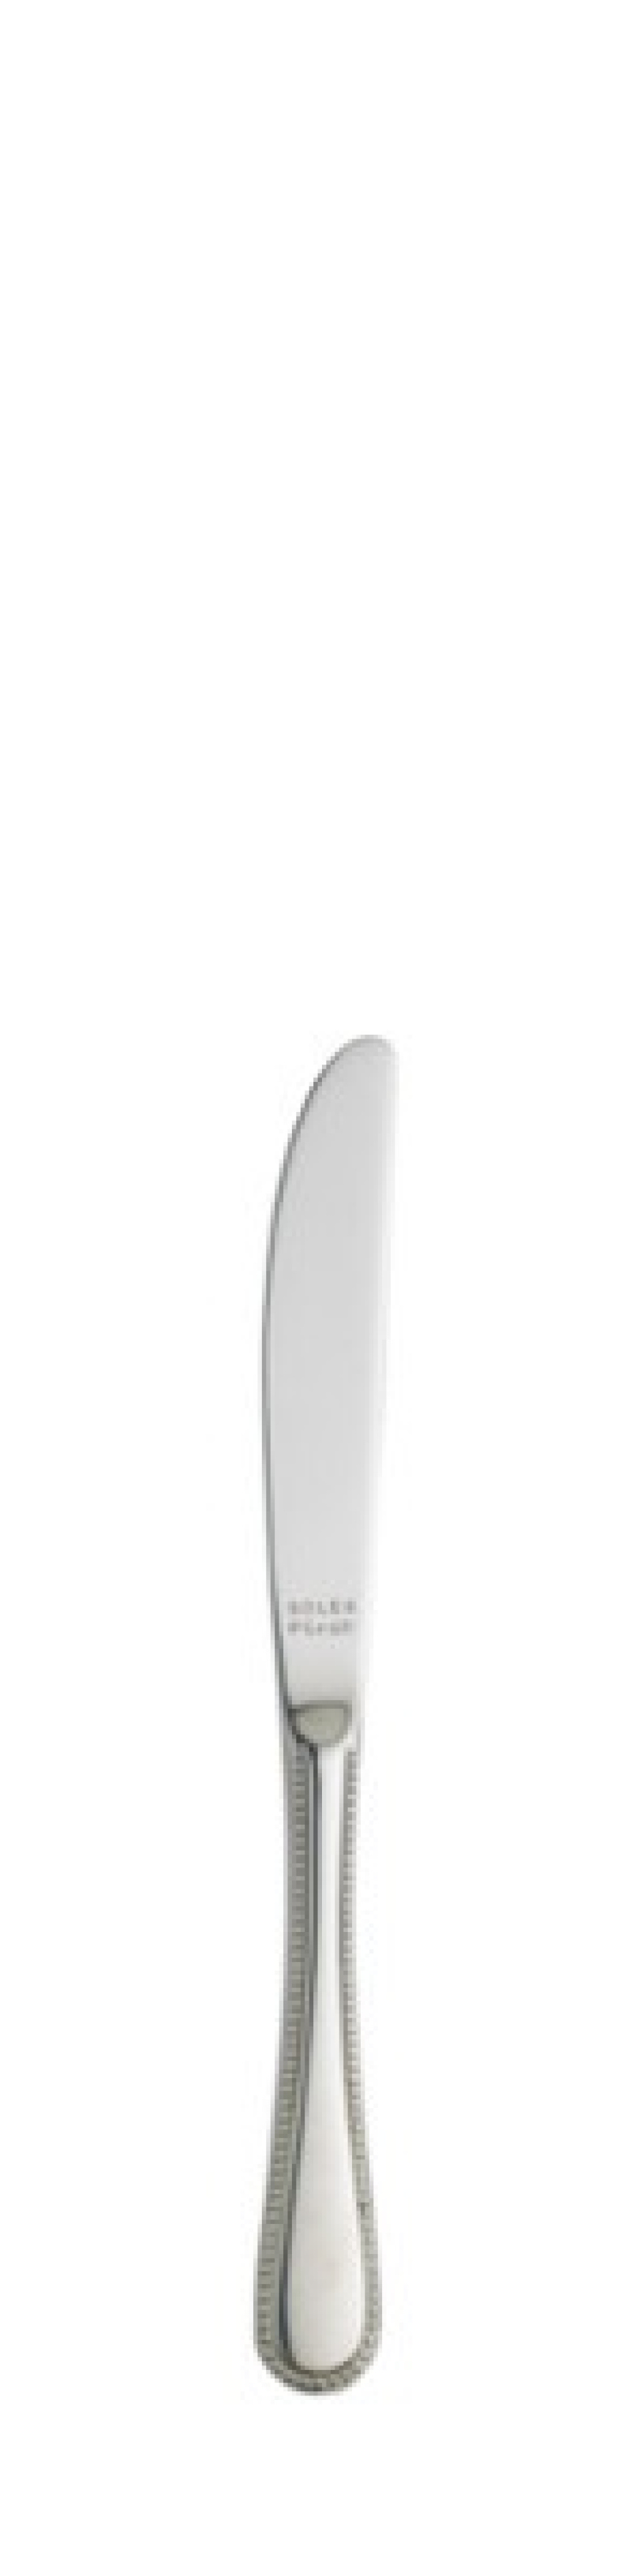 Nóż do masła Perle 174 mm - Solex w grupie Nakrycie stołu / Sztućce / Noże do masła w The Kitchen Lab (1284-21424)